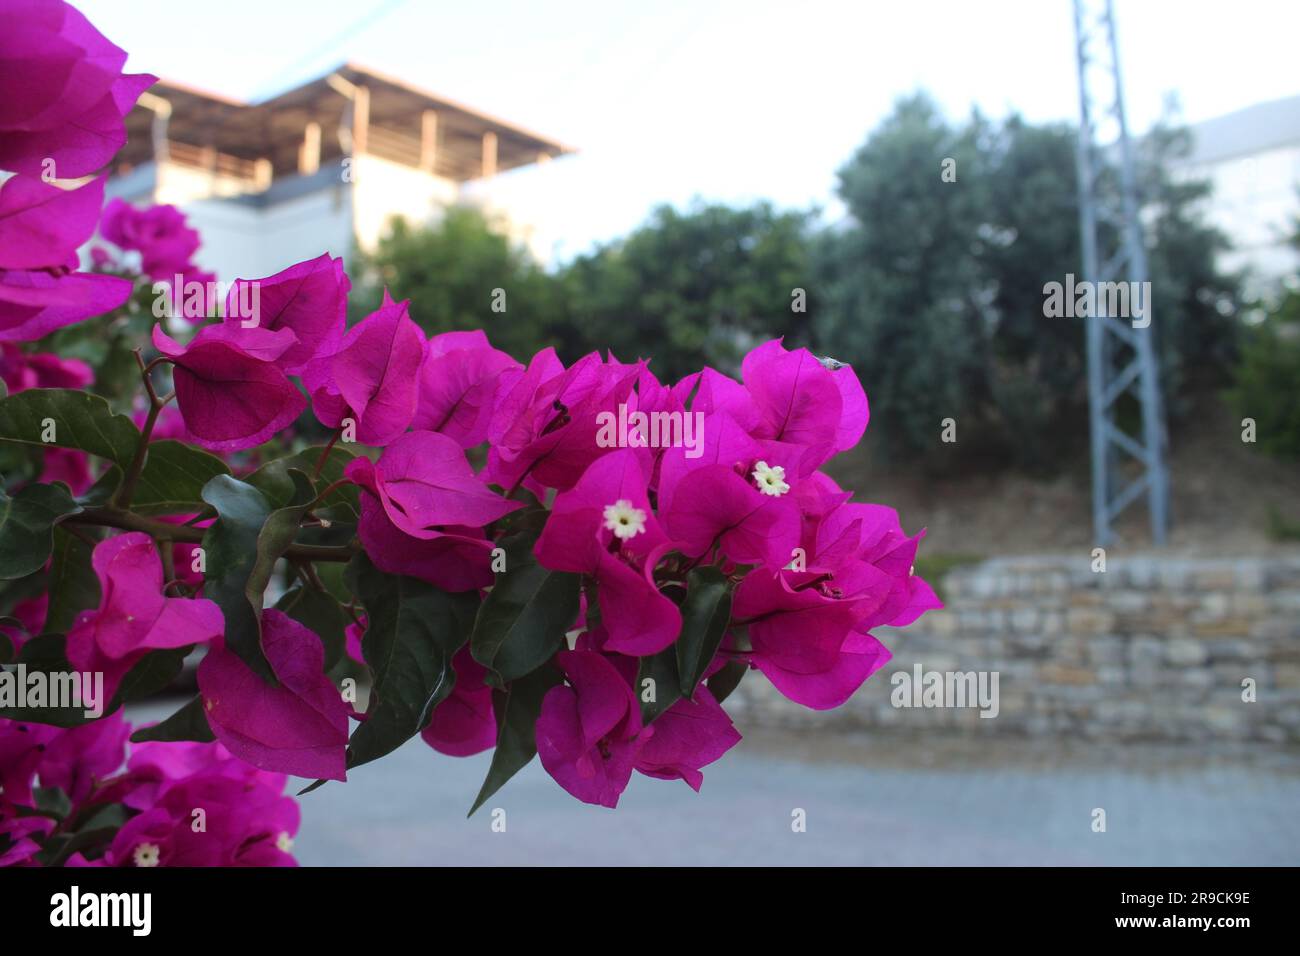 Purple flowers of bougainvillea tree in street. Stock Photo